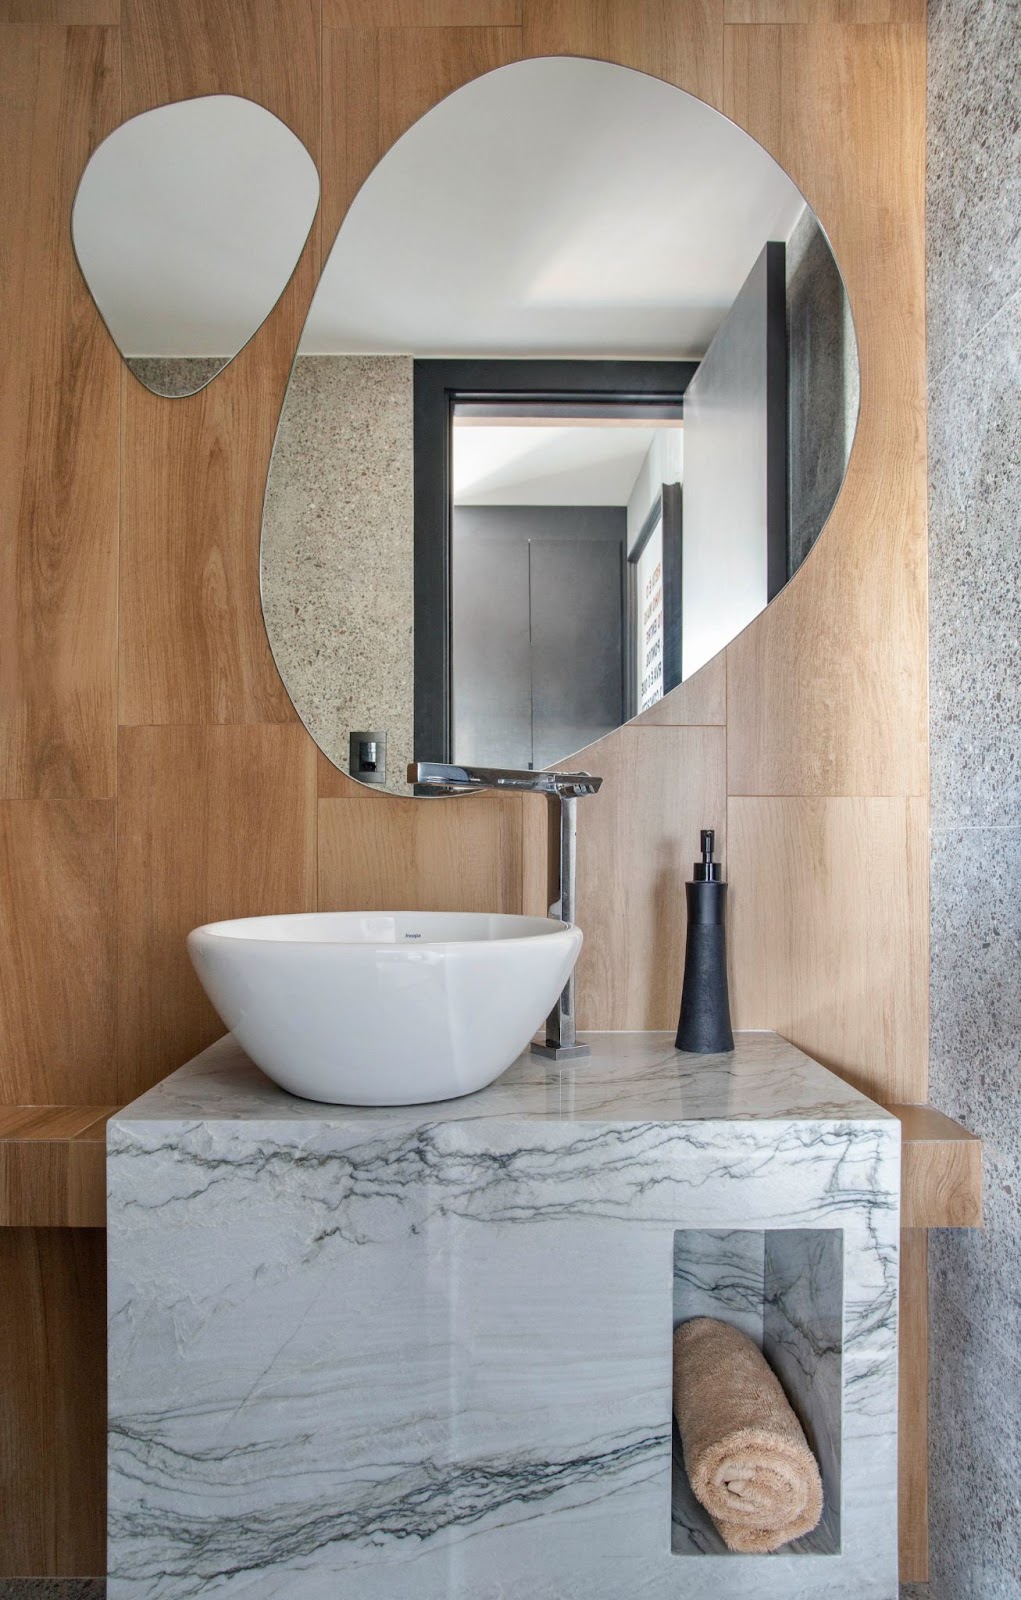 Banheiro com espelho em formato livre aplicado sobre a parede de porcelanato com padrão de madeira, bancada de mármore com cuba branca.